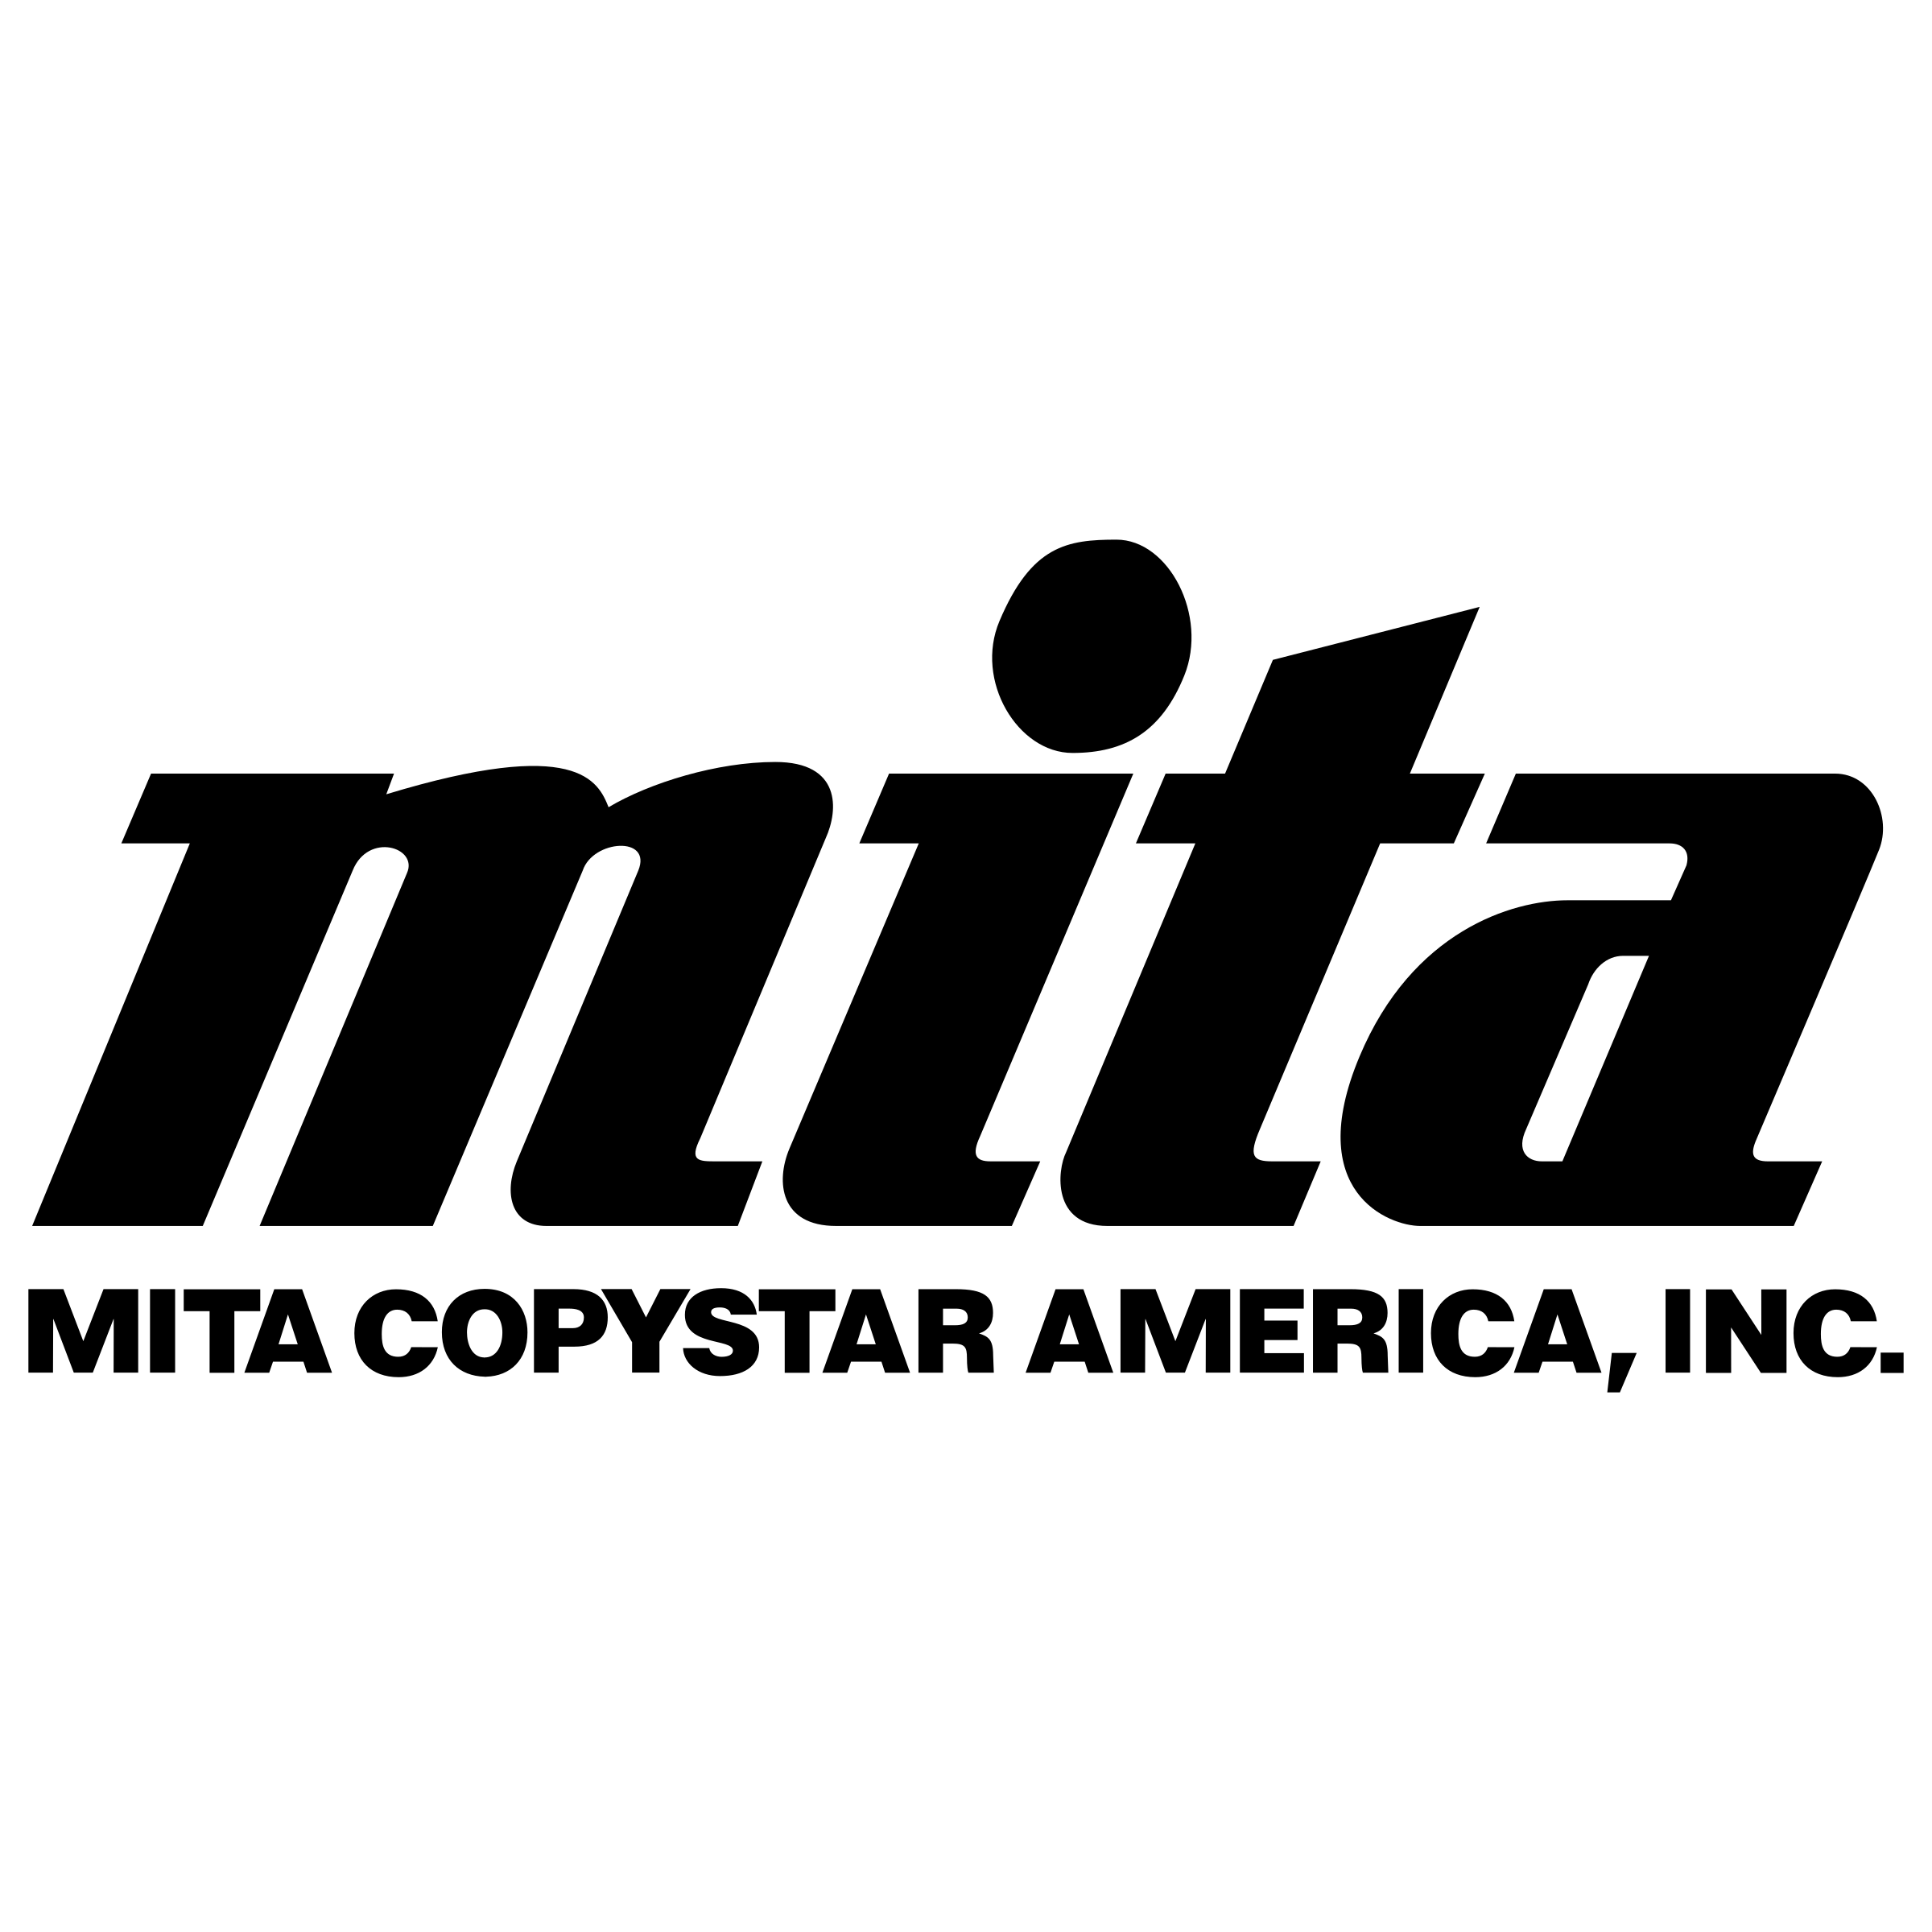 Copystar Logo - Mita Copystar America Logo PNG Transparent & SVG Vector - Freebie Supply